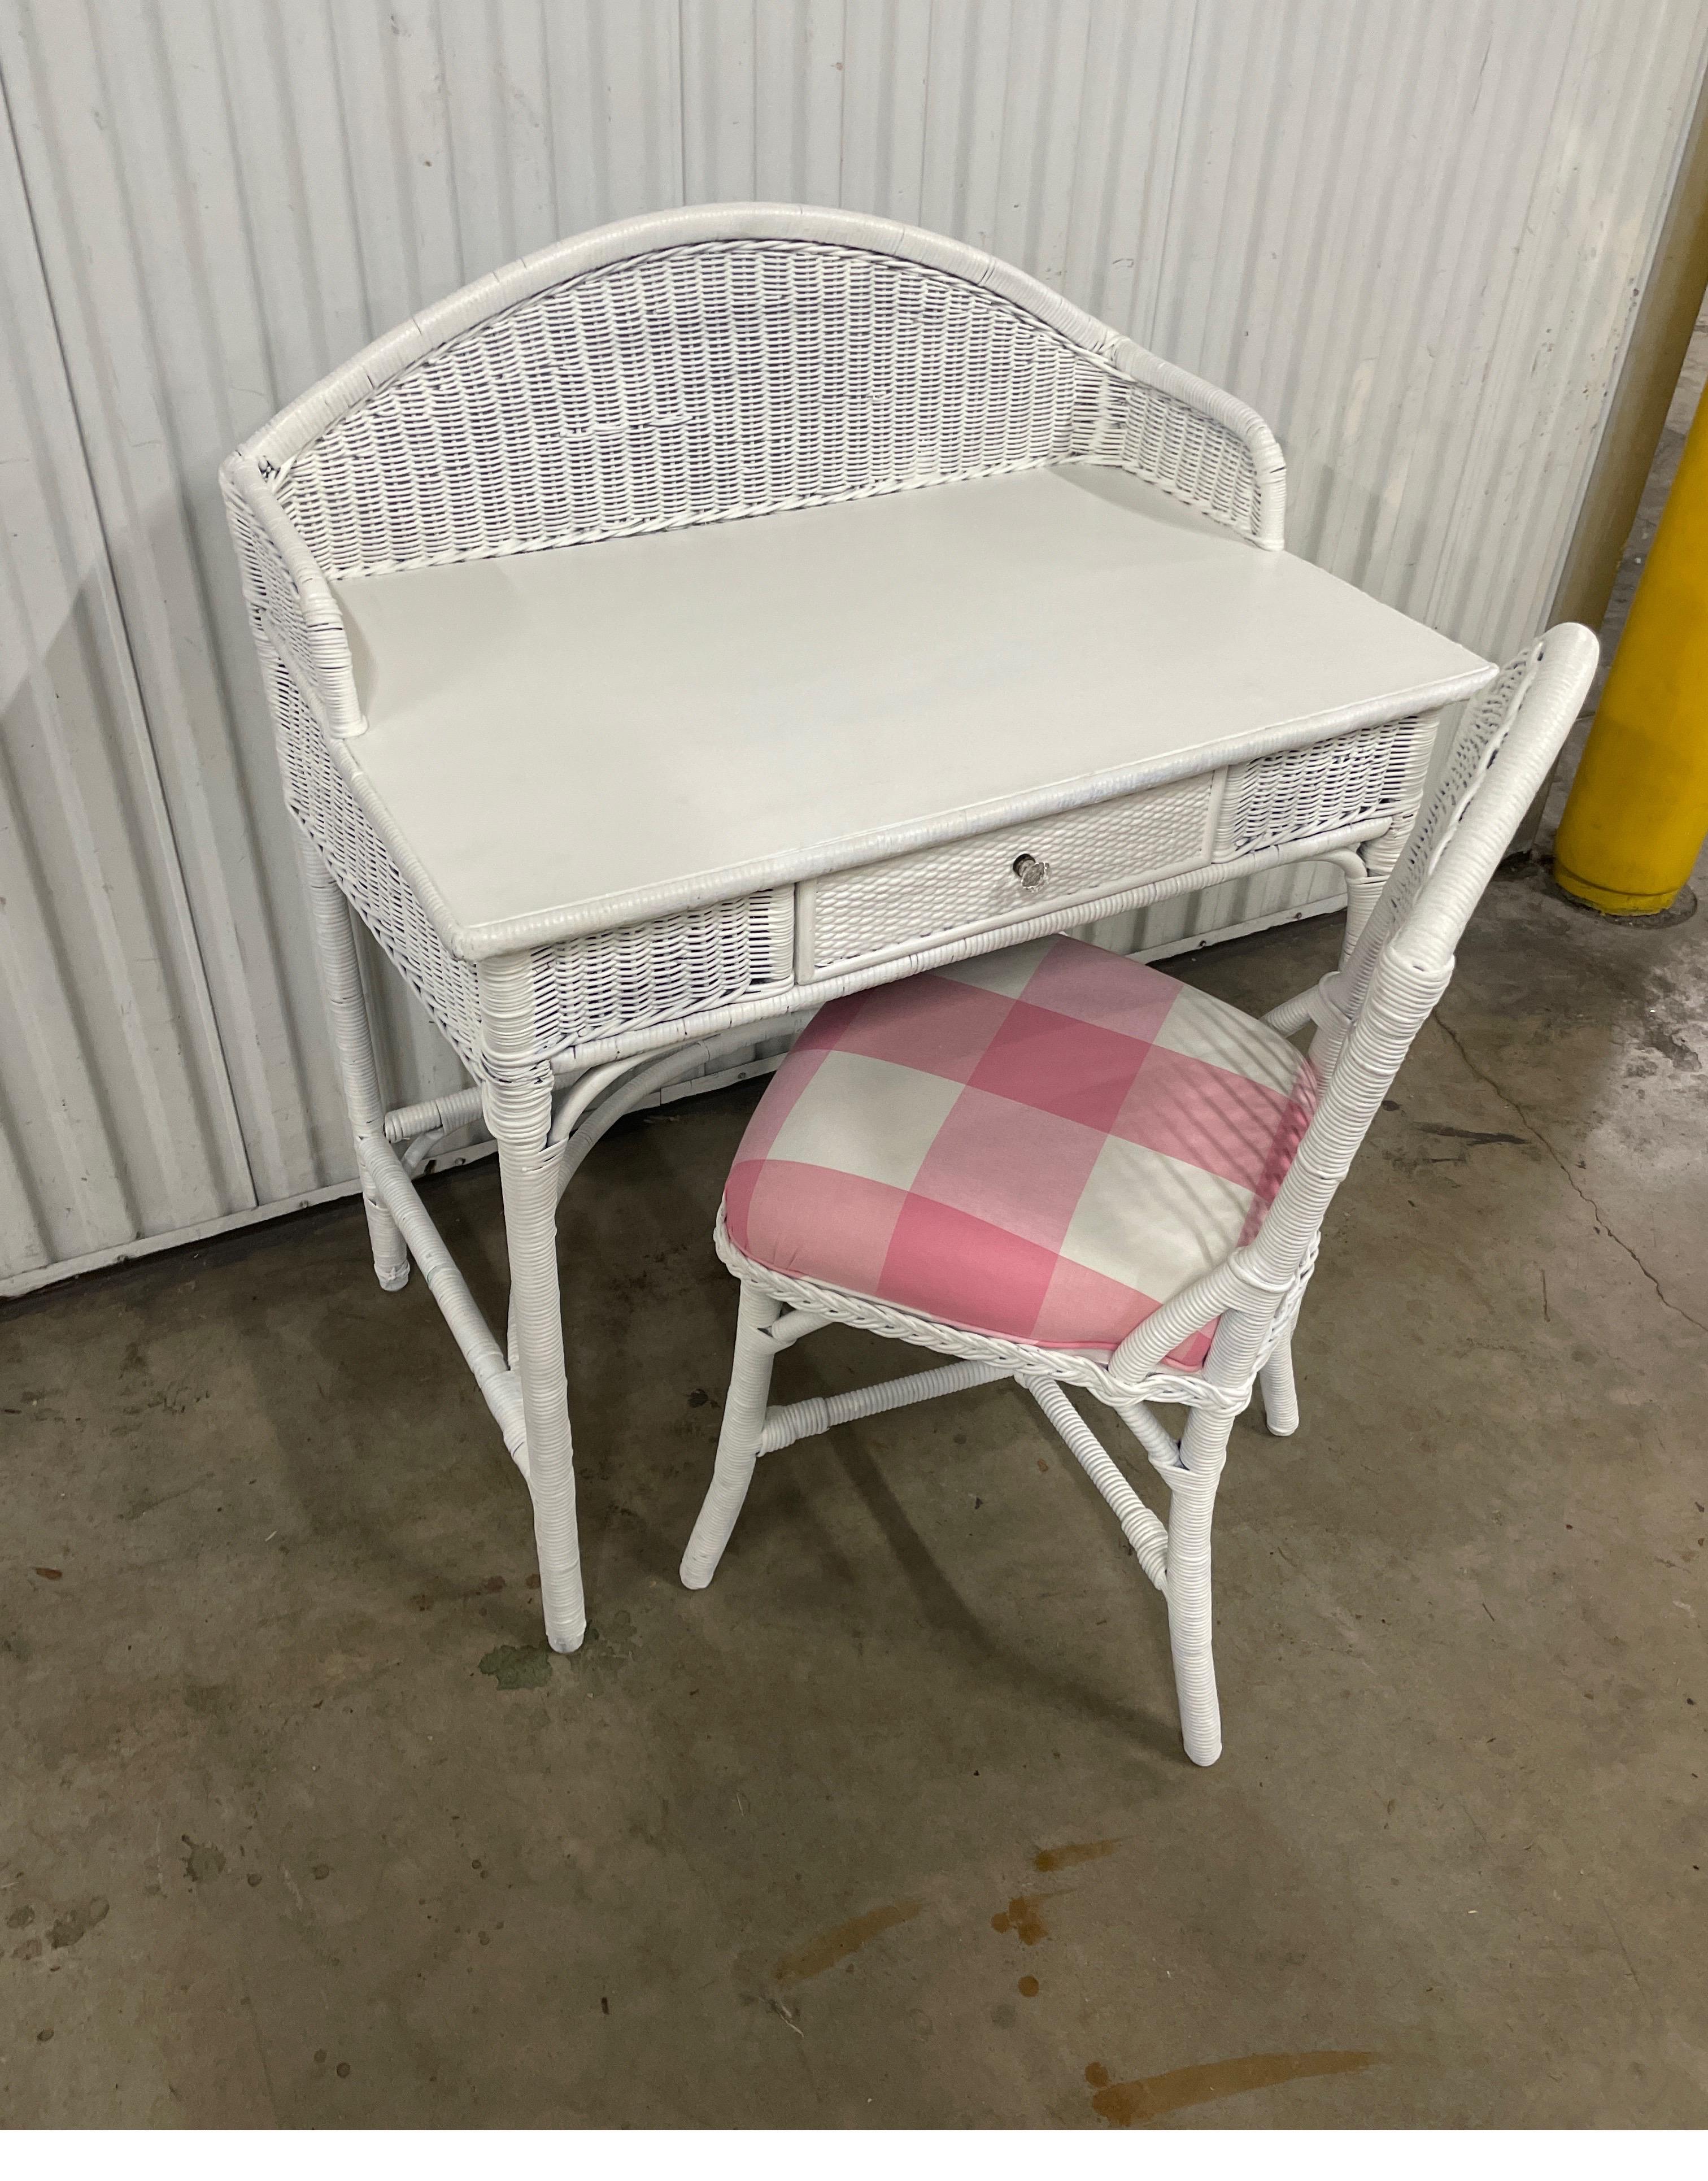 Charmante antike Korbwaren Eitelkeit / Schreibtisch mit passenden Stuhl. Das Sitzkissen des Stuhls wurde mit einem rosa-weiß karierten Baumwollstoff neu bezogen. Ein sehr süßes Set!.